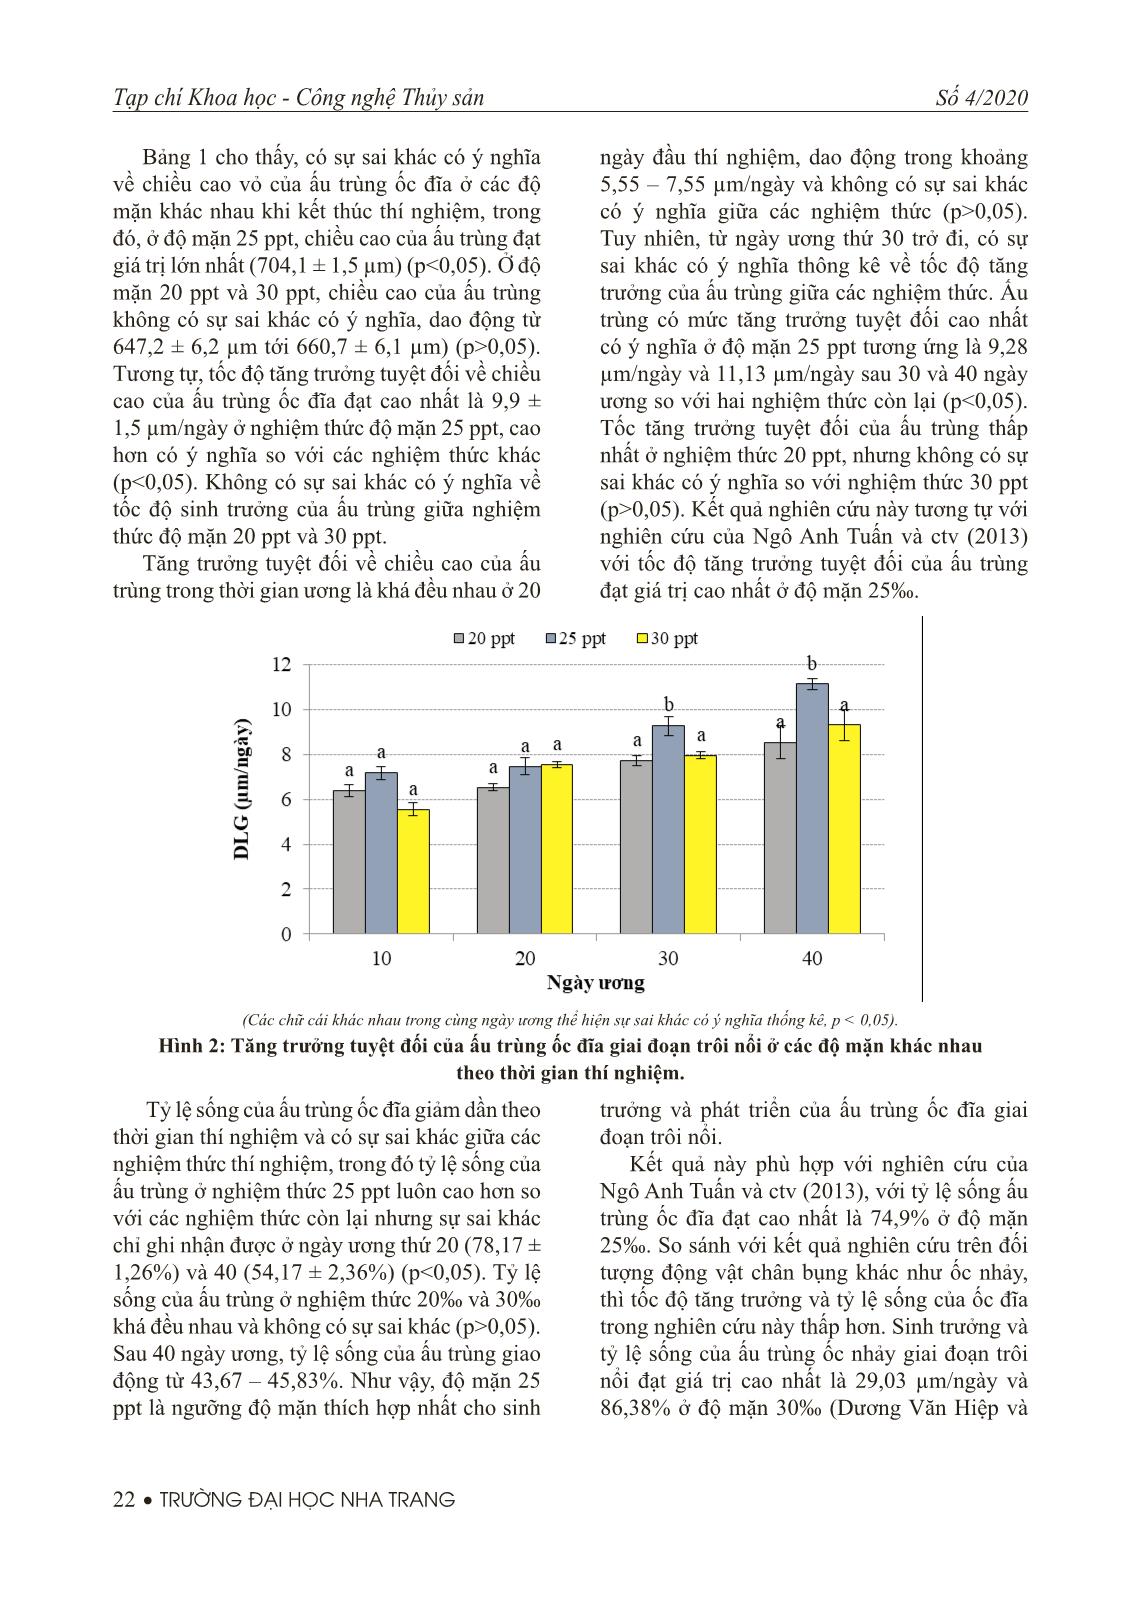 Ảnh hưởng của độ mặn và thức ăn đến sinh trưởng, tỷ lệ sống của ấu trùng ốc đĩa (nerita balteata reeve, 1855) giai đoạn trôi nổi trang 4